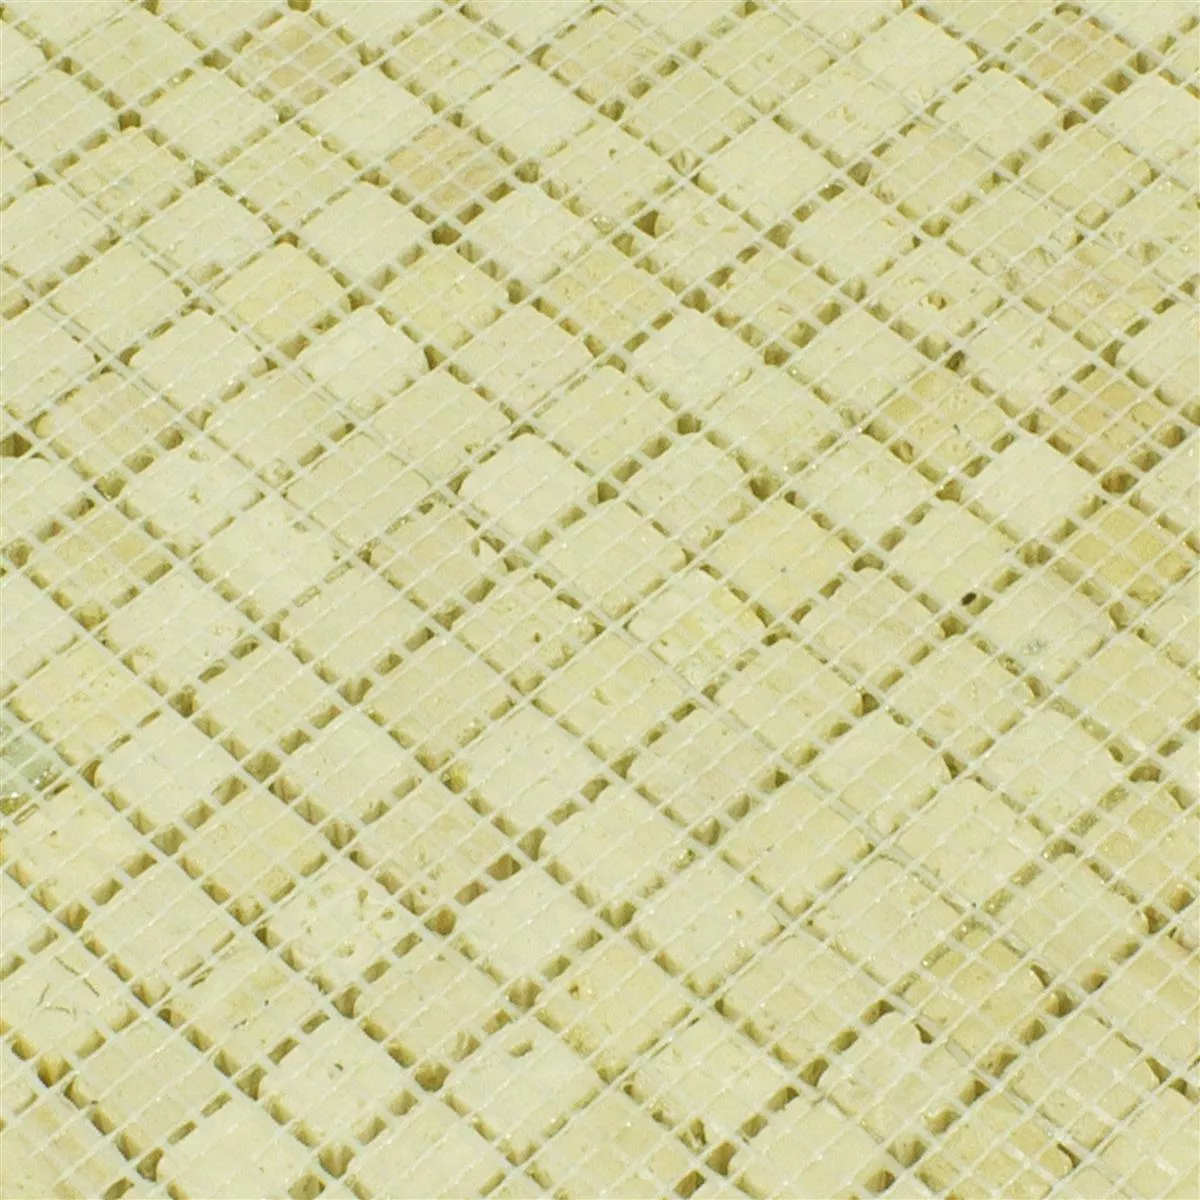 Sample Marble Natural Stone Mosaic Tiles Antika Mix Gold Creme